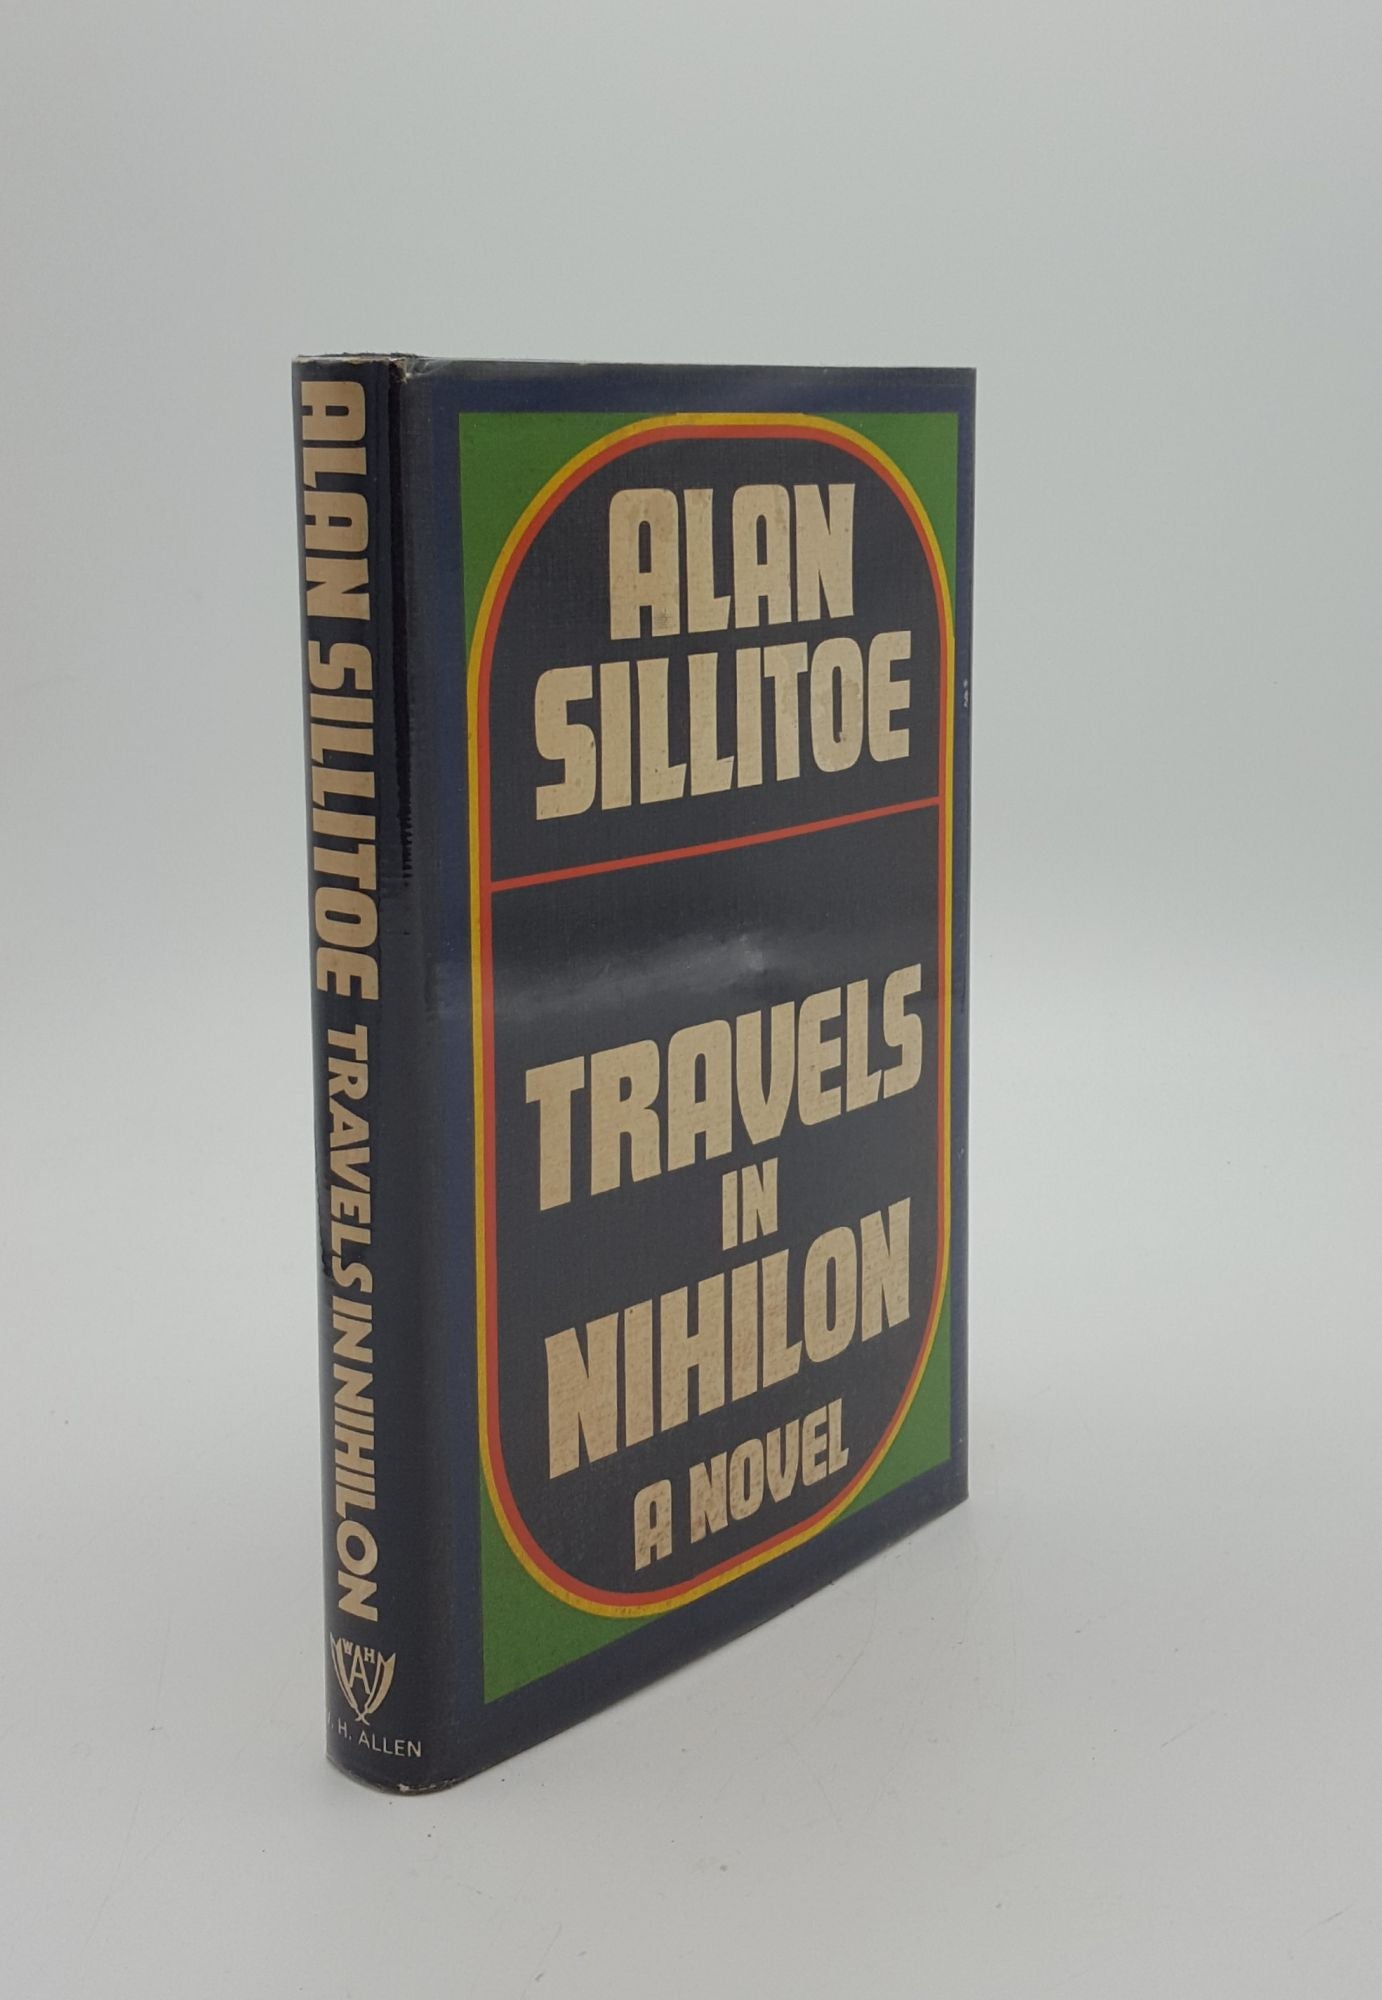 SILLITOE Alan - Travels in Nihilon